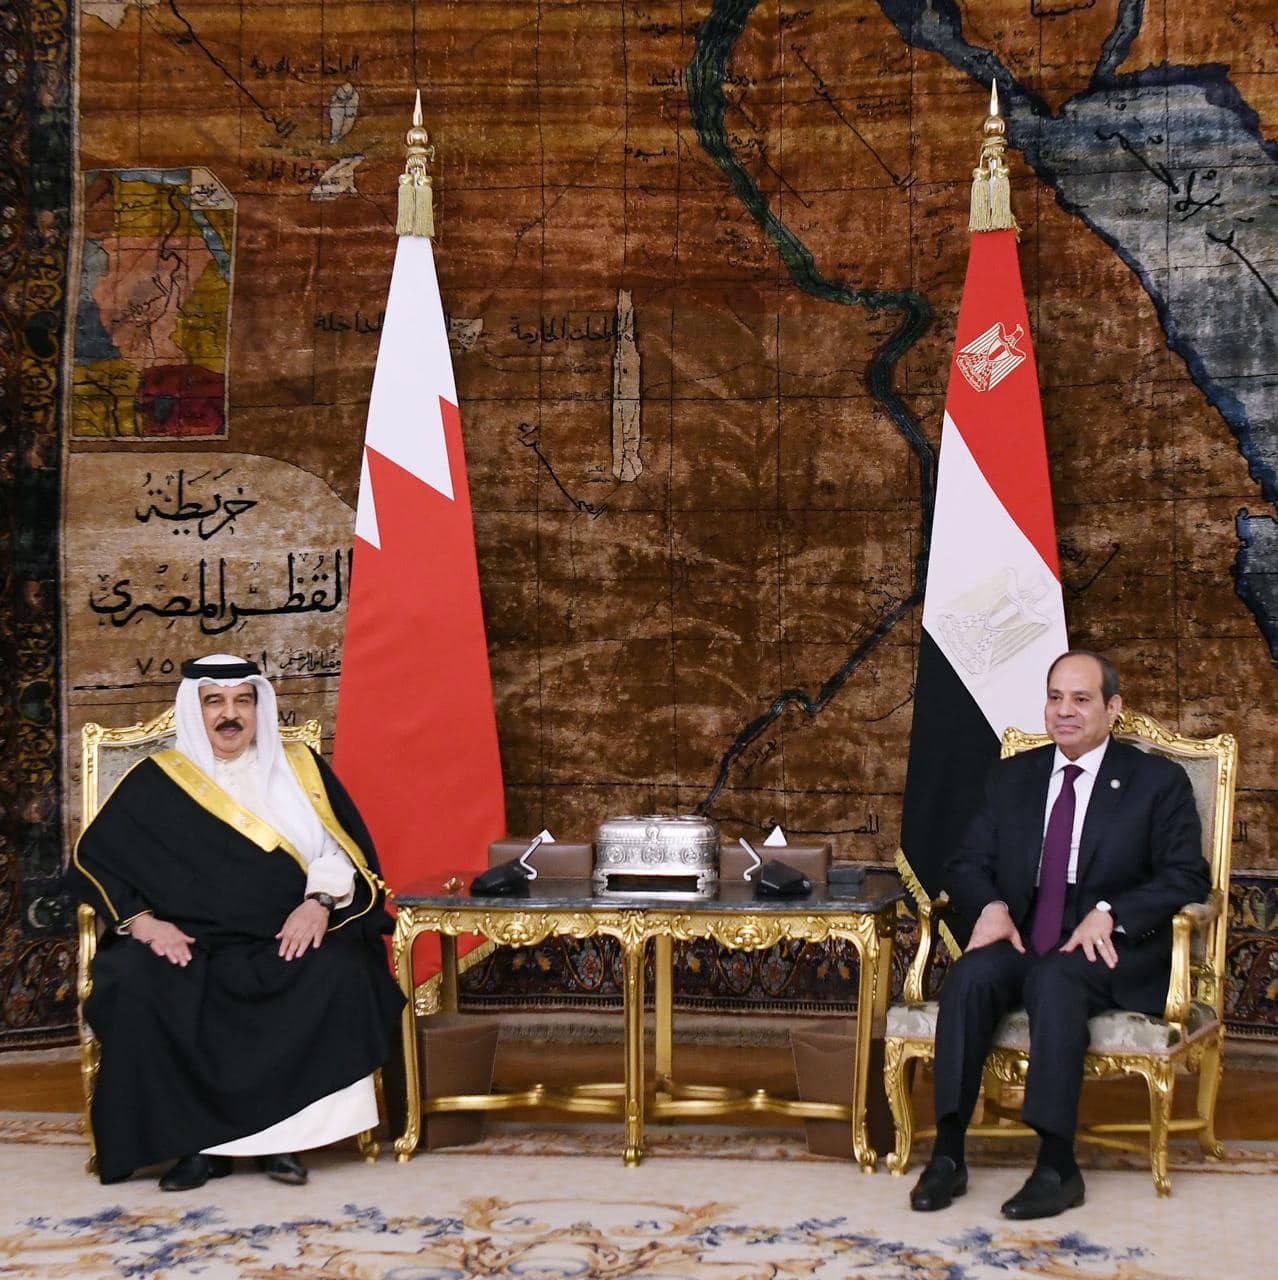 الرئيس المصري عبدالفتاح السيسي يلتقي العاهل البحريني الملك حمد بن عيسى آل خليفة